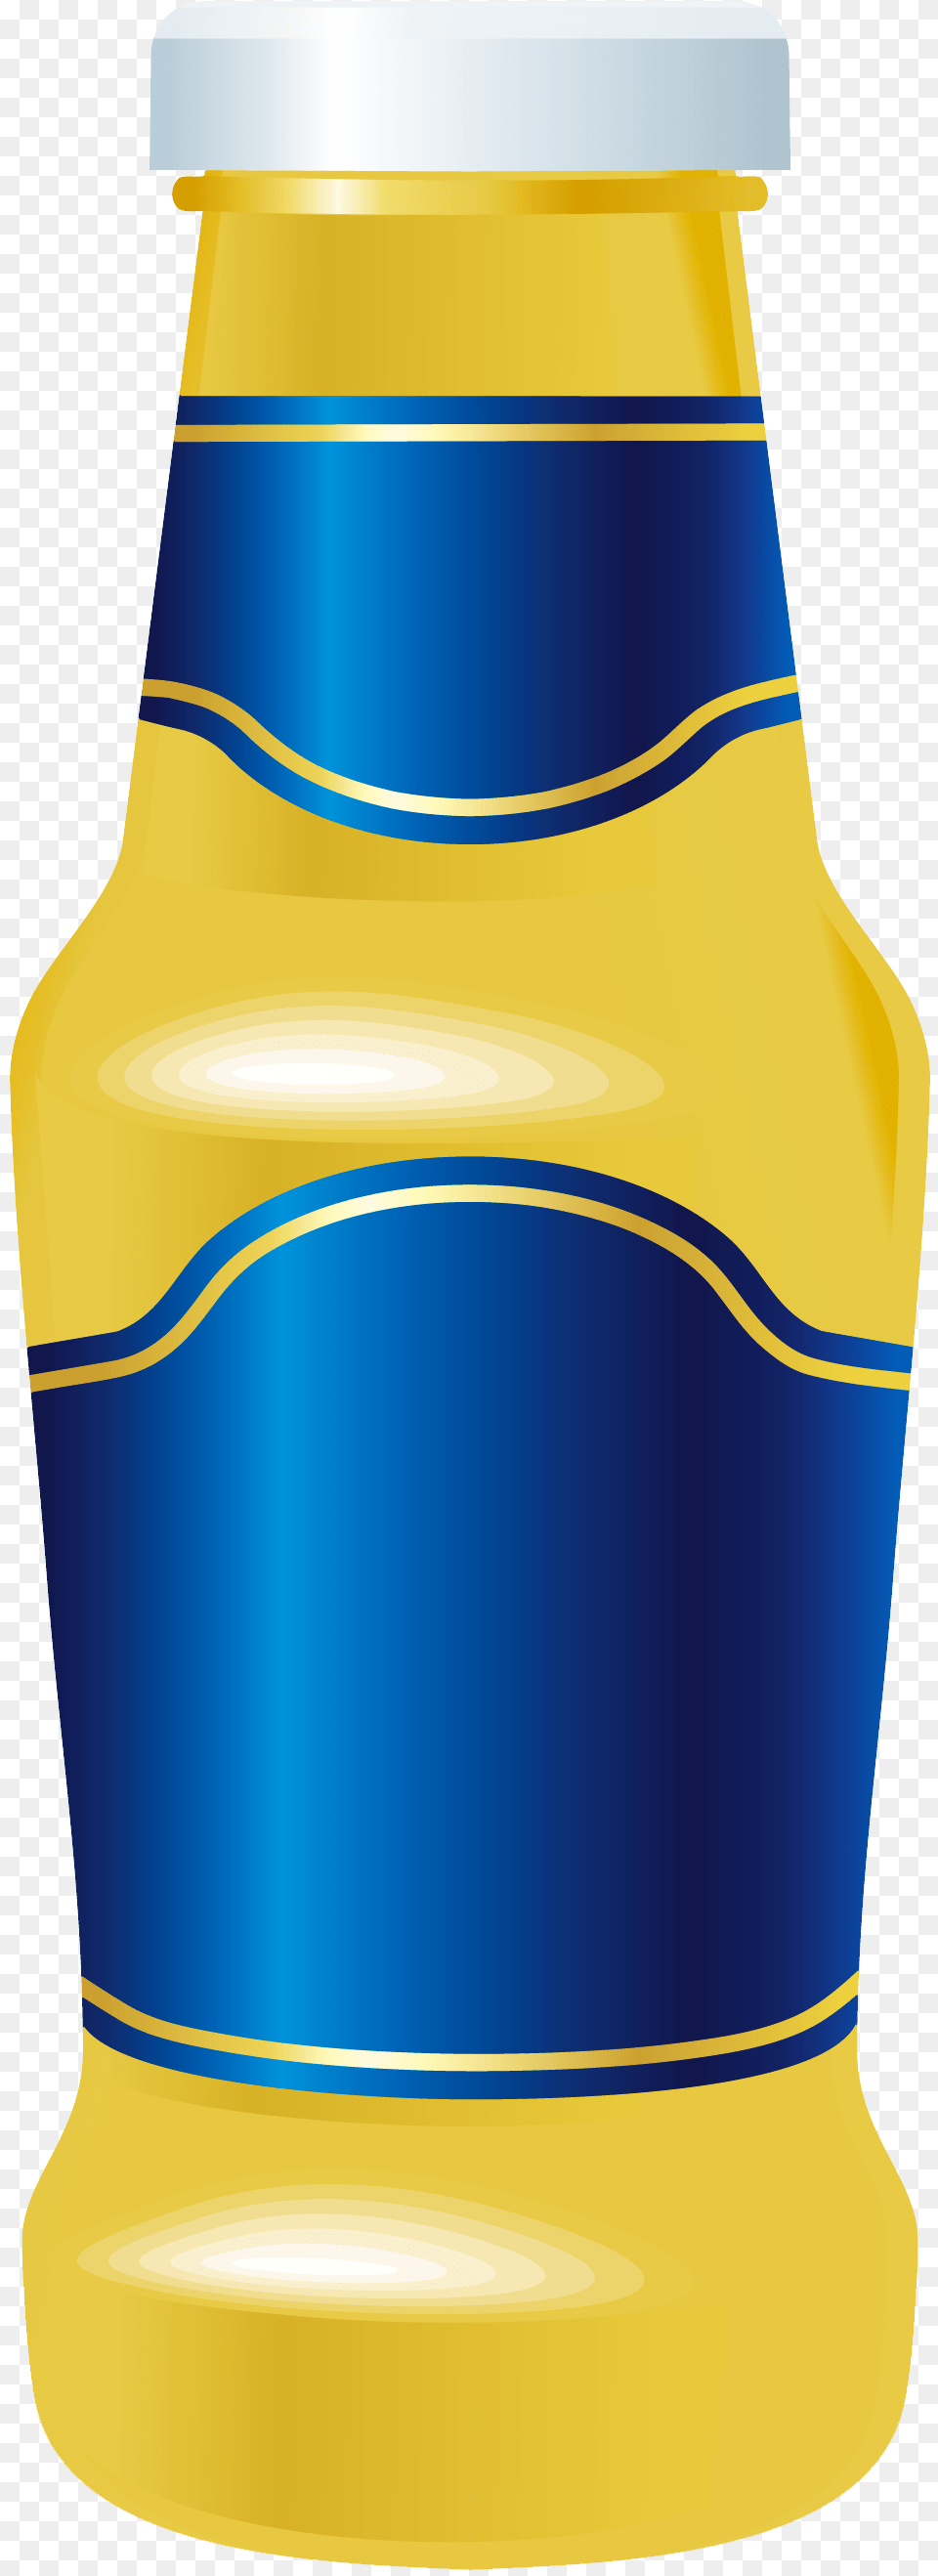 Clipart School Water Bottle Mustard Bottle, Alcohol, Beer, Beverage, Jar Free Transparent Png